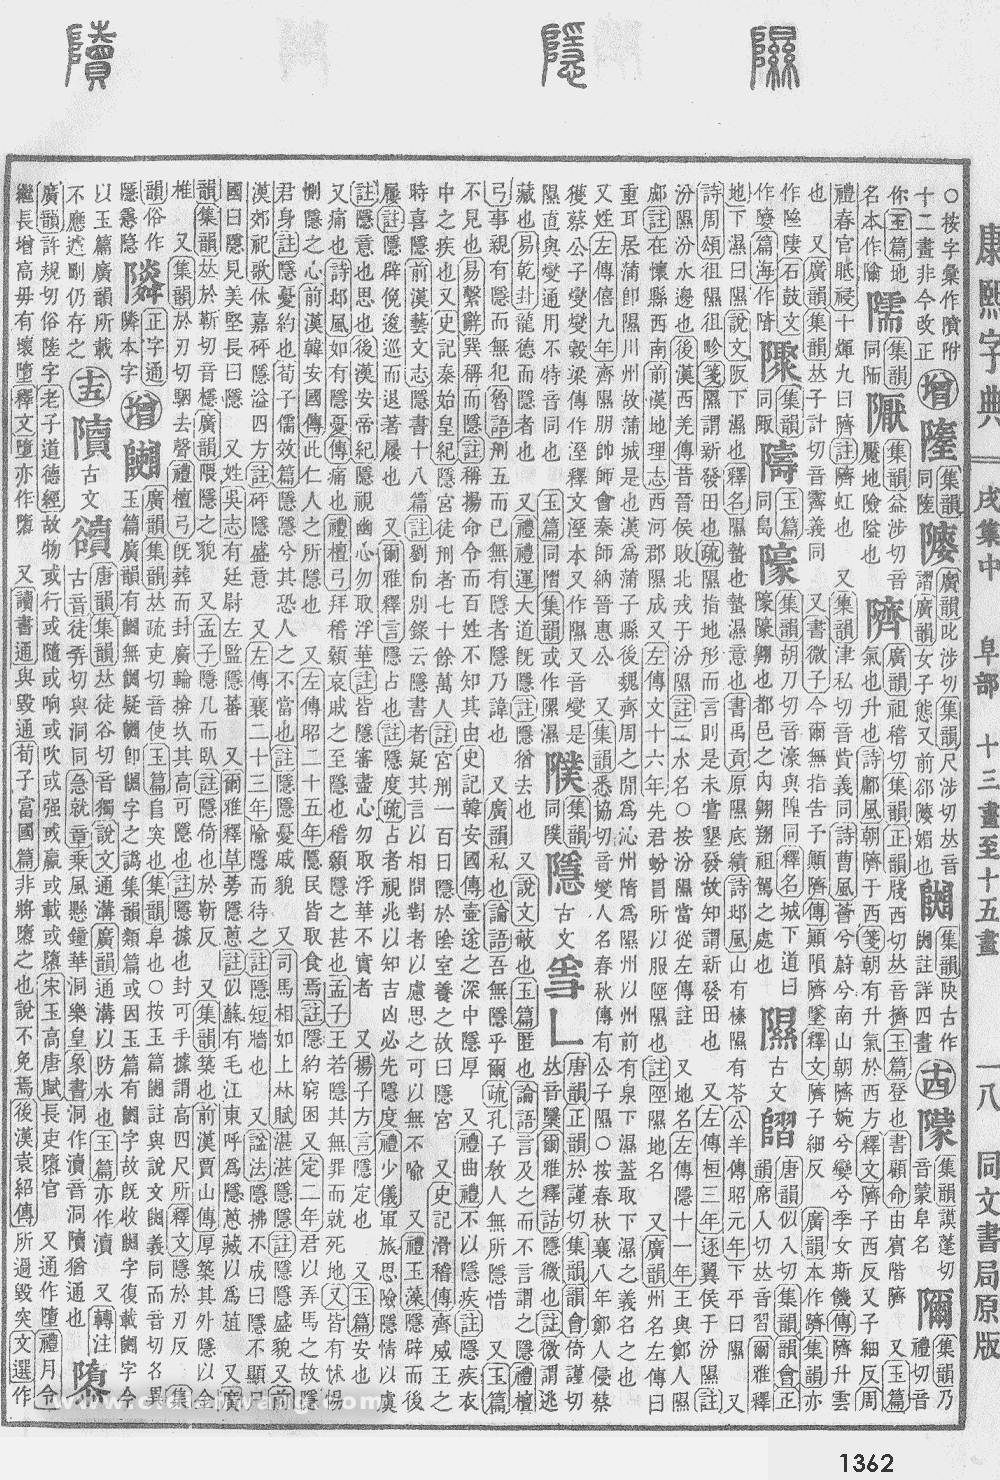 康熙字典掃描版第1362頁